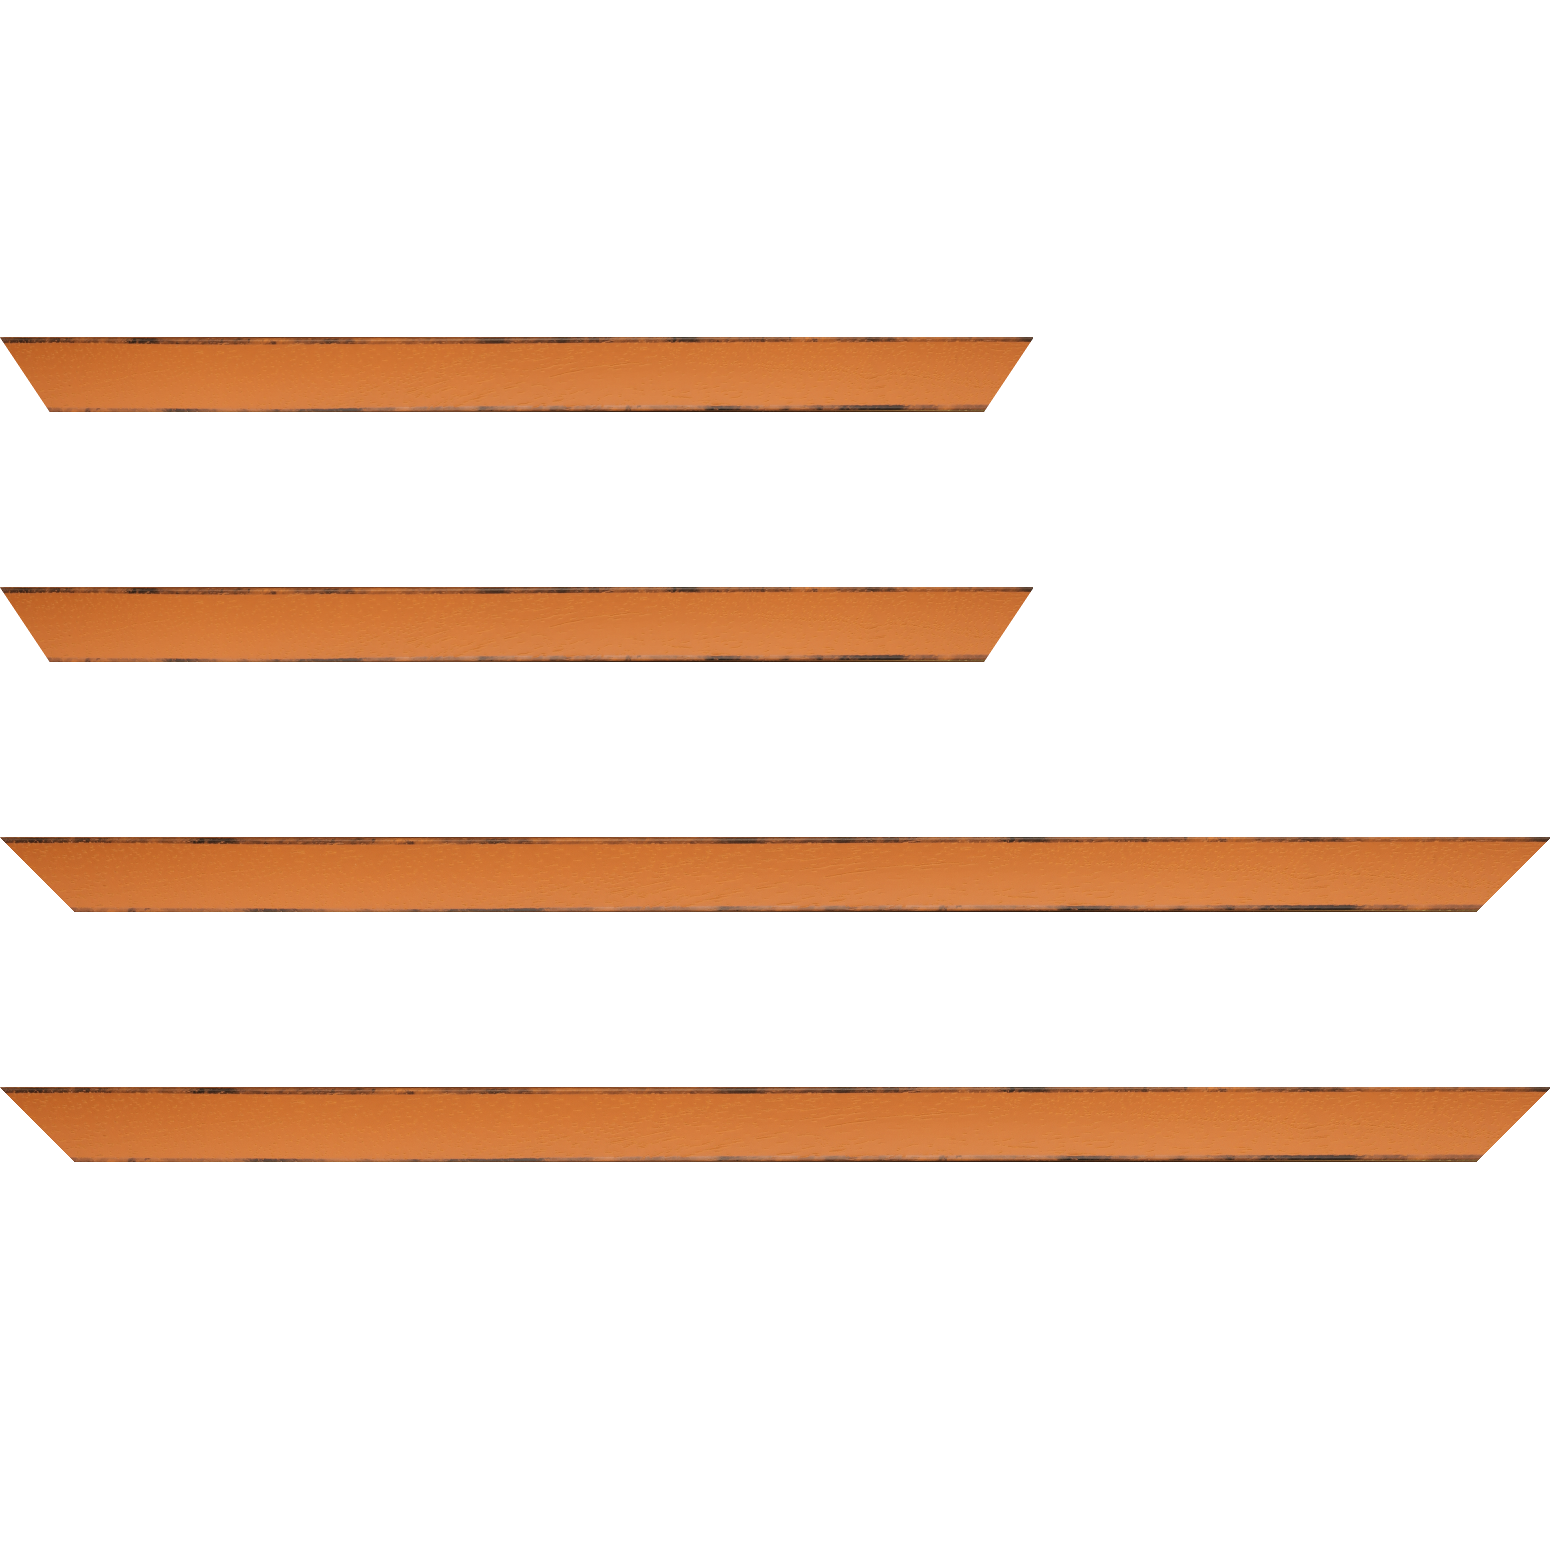 Baguette bois profil concave largeur 2.4cm couleur orange tonique  satiné  arêtes essuyés noircies de chaque coté - 59.4x84.1